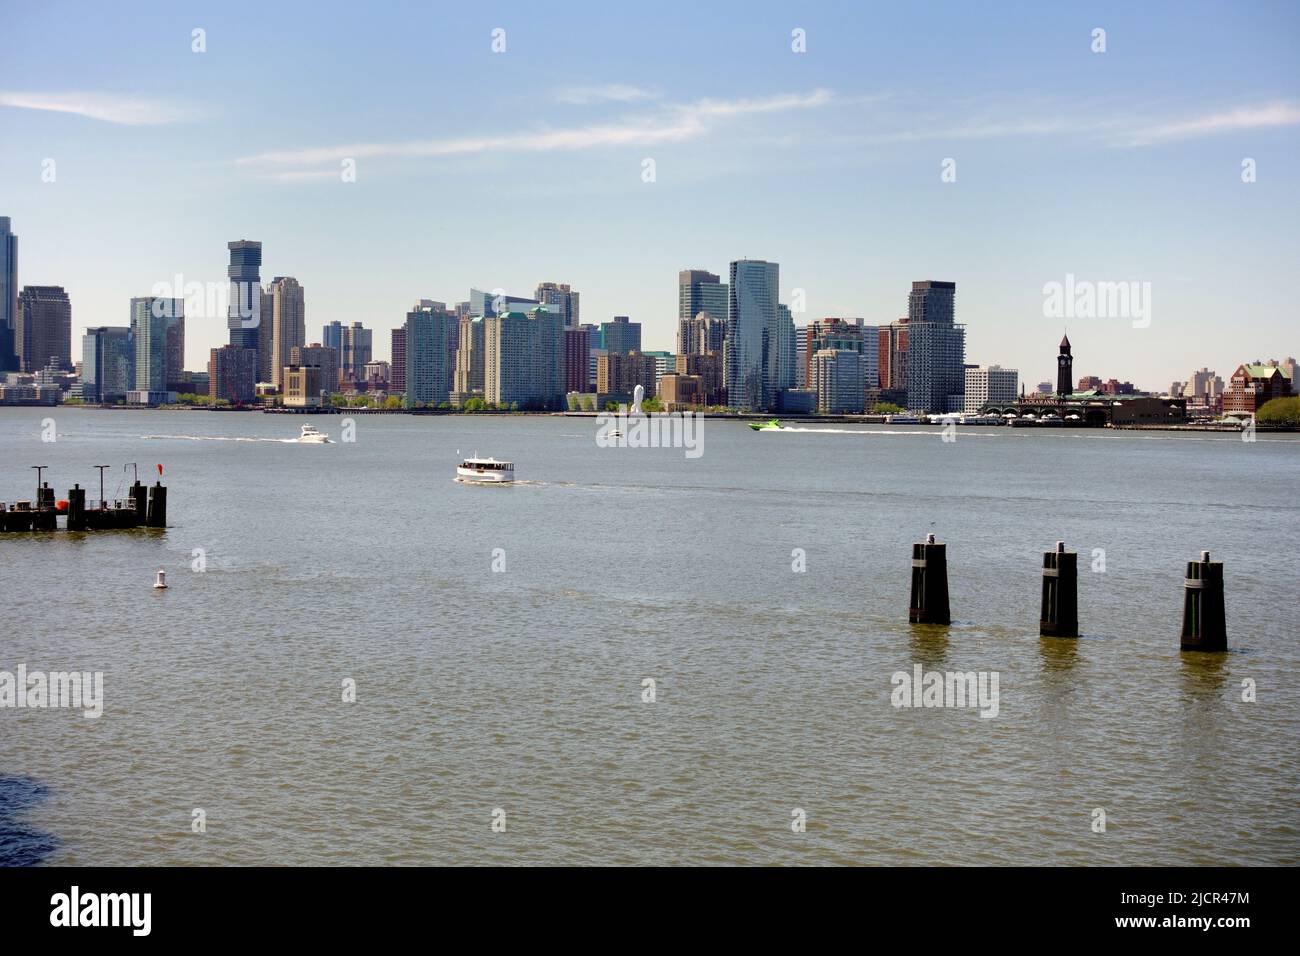 New York skyline across the Hudson River Stock Photo